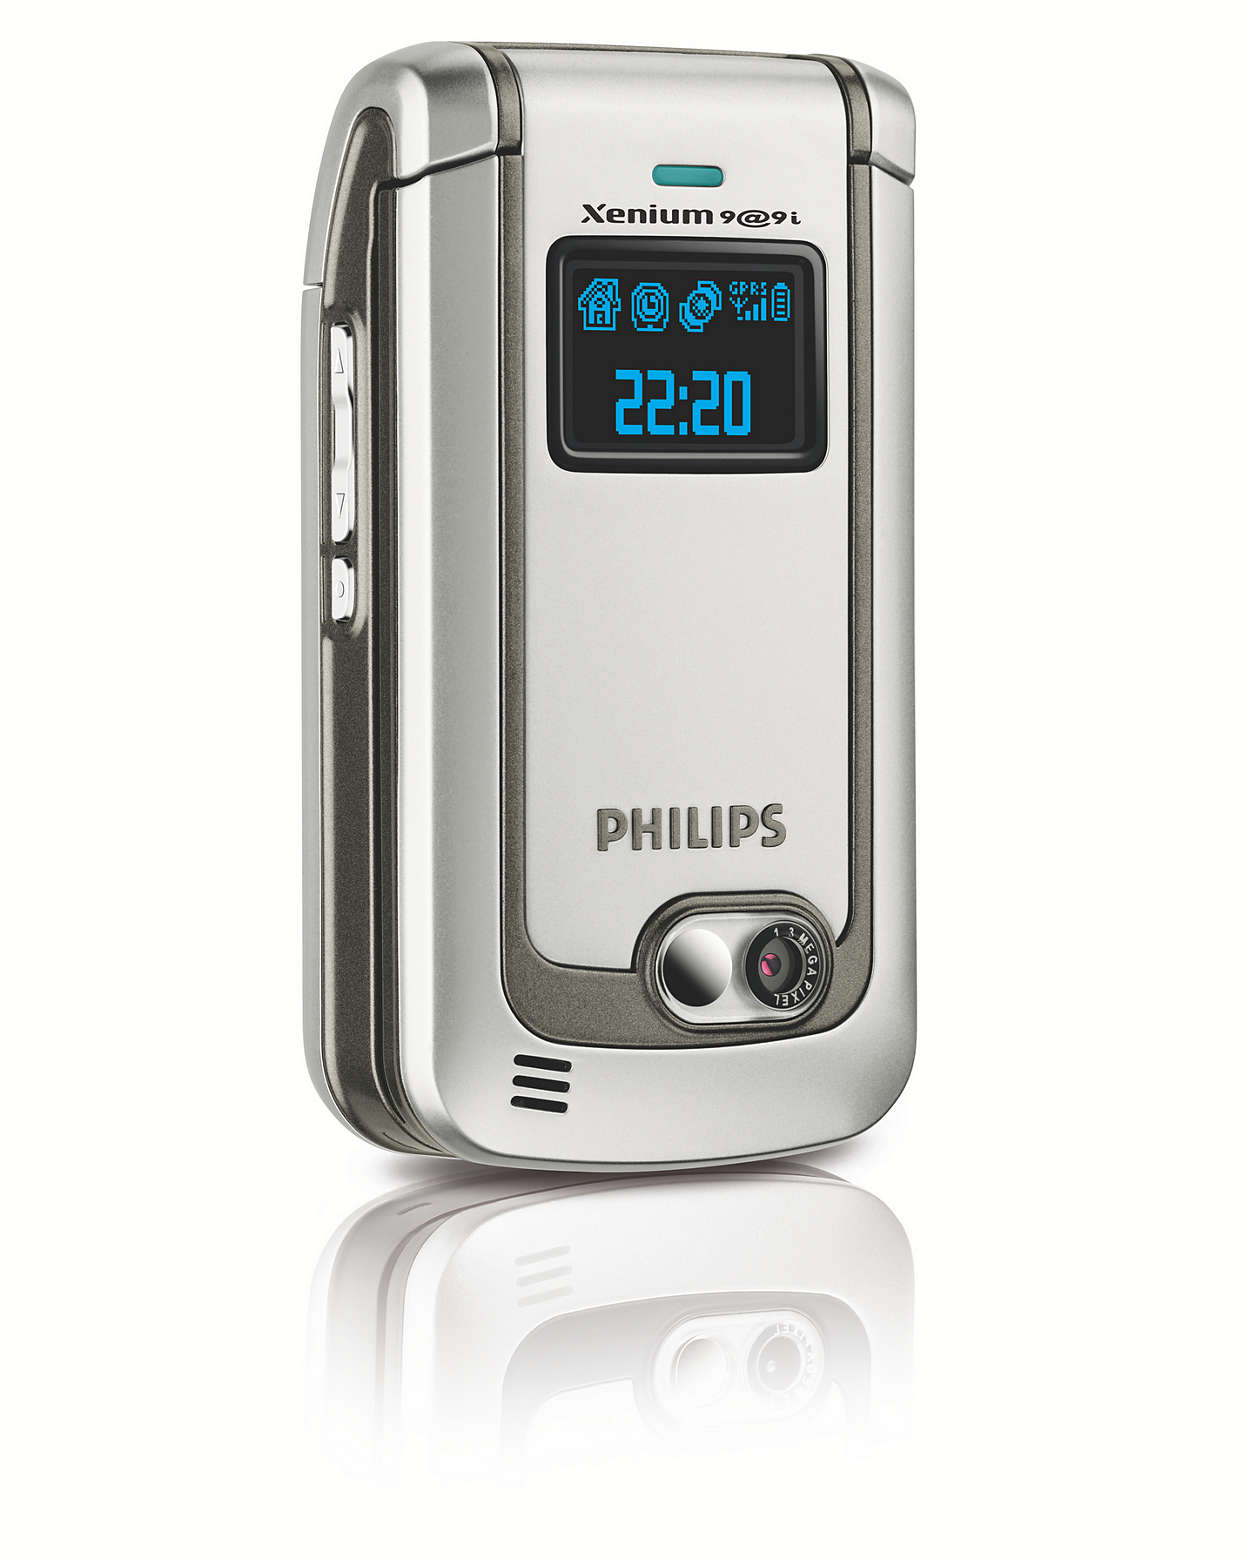 Philips xenium раскладушка. Philips Xenium 9@9. Philips Xenium 9@9e. Philips Xenium 9@9 2000. Philips Xenium раскладушка 9@9.